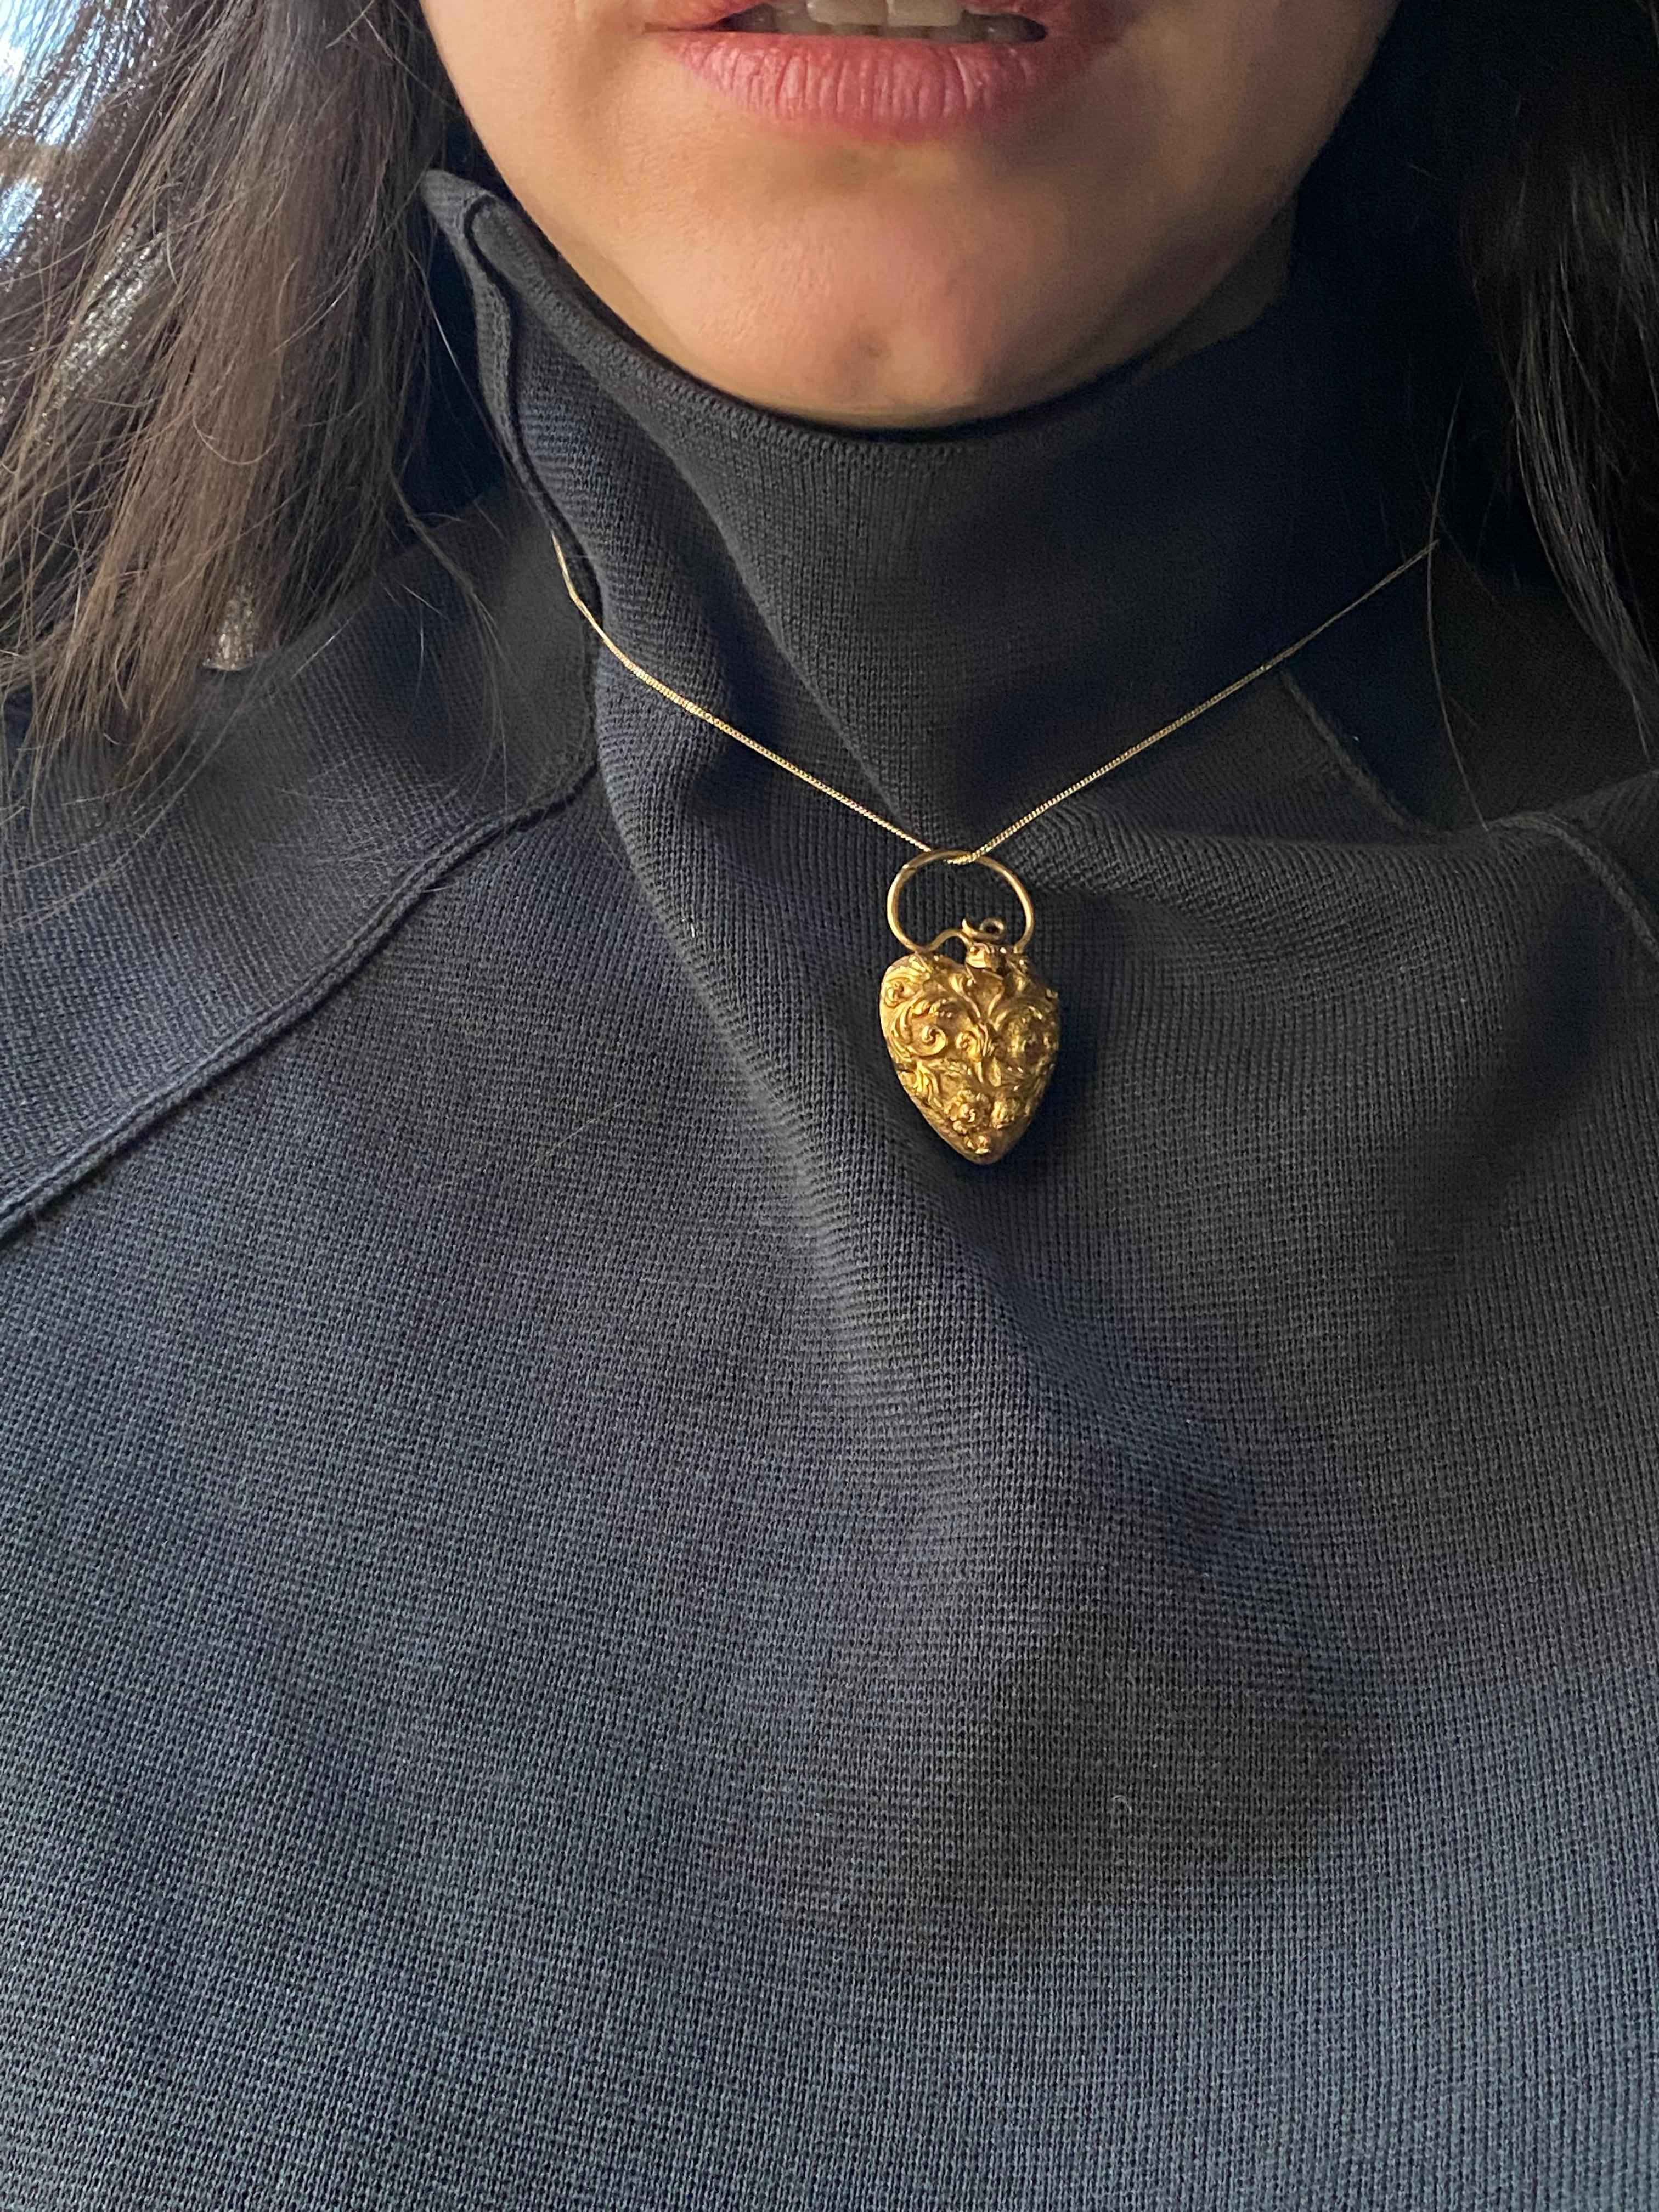 Georgian 18 Karat Gold Heart Shaped Locket Pendant with Snake Motif 3